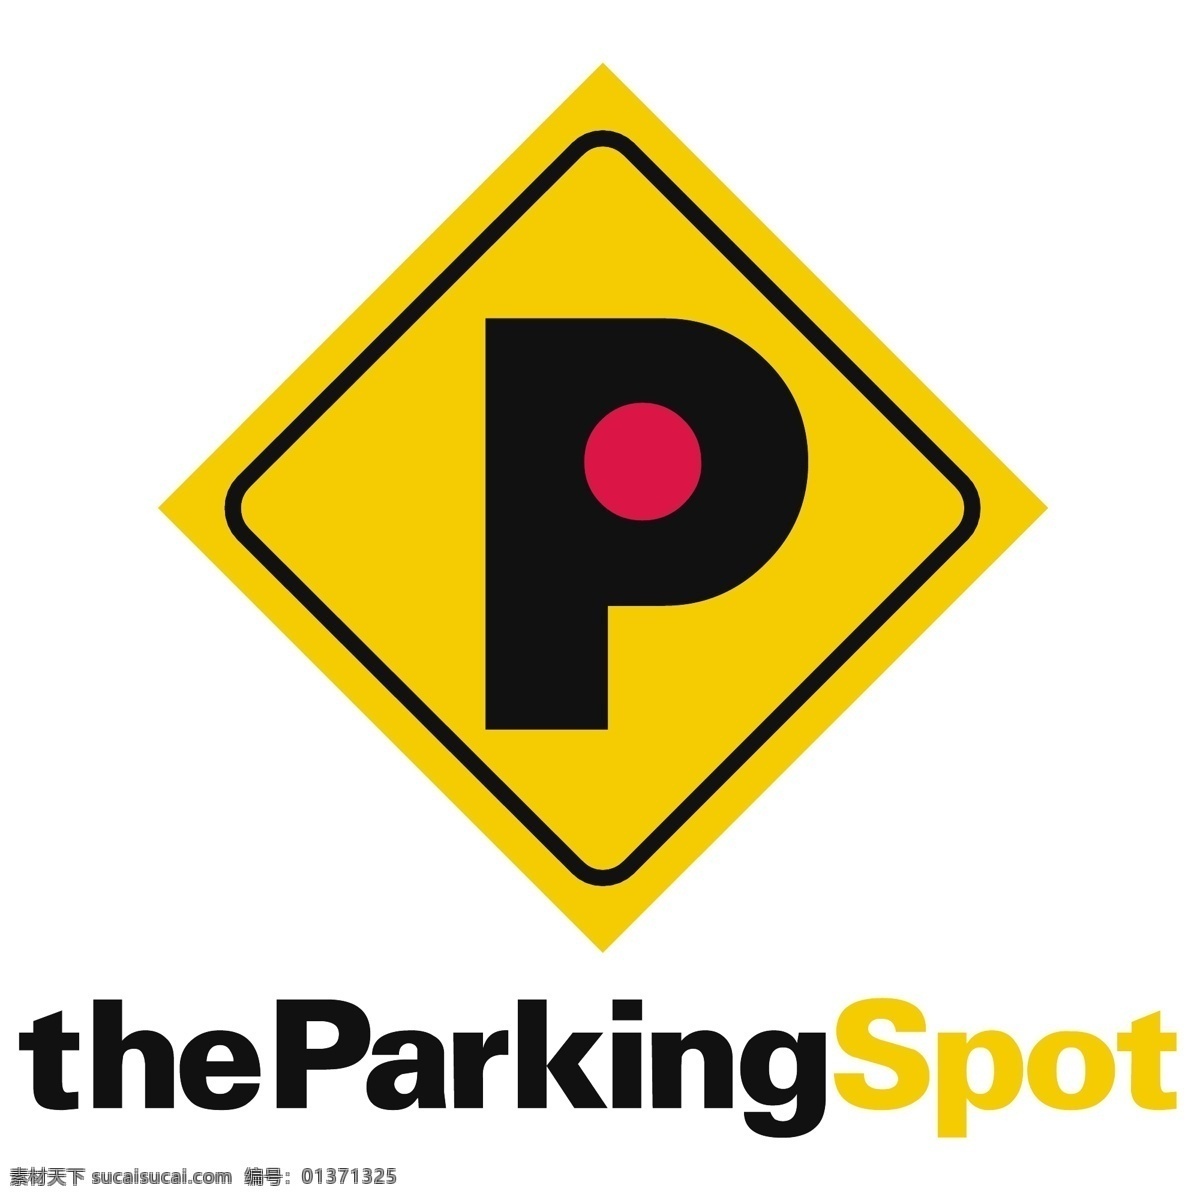 停车场 免费 停车位 标志 psd源文件 logo设计